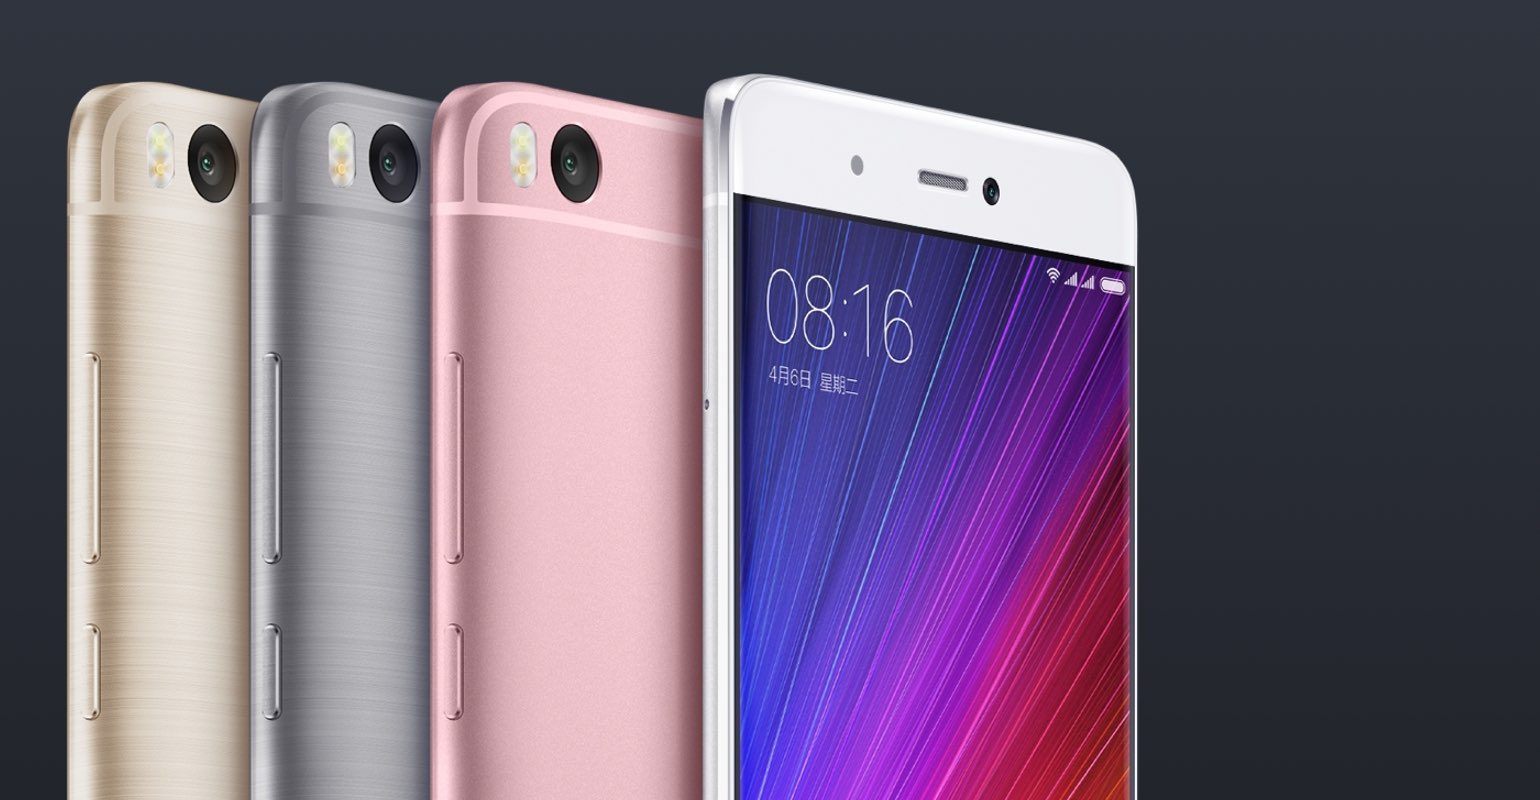 Осенний смартфонопад: китайский «Galaxy Note 7» и другие новинки от Xiaomi - 10